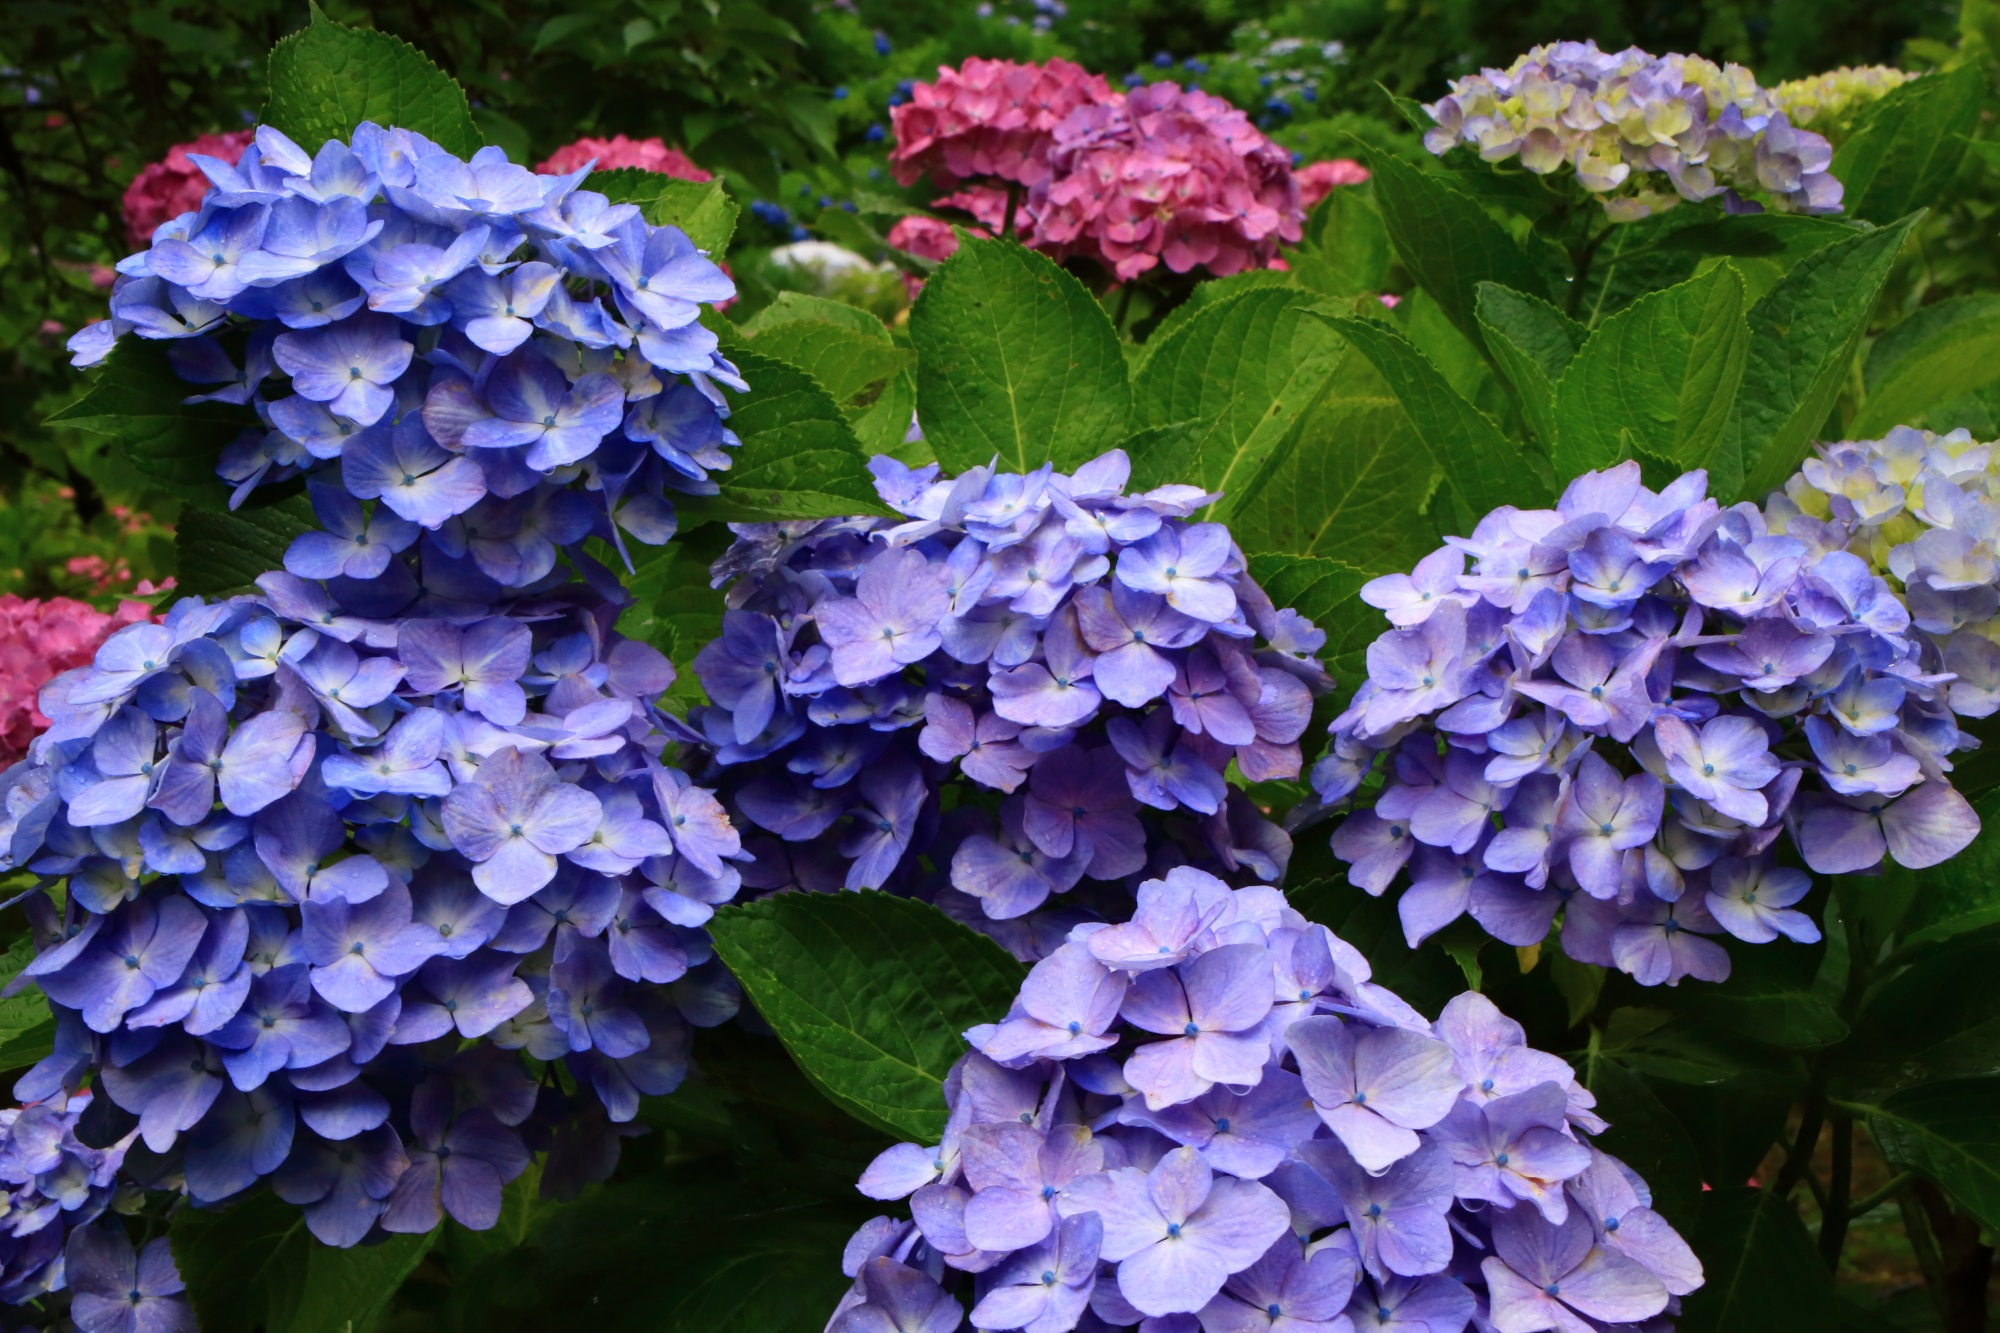 善峯寺の咲き誇る薄い紫色の華やかな紫陽花